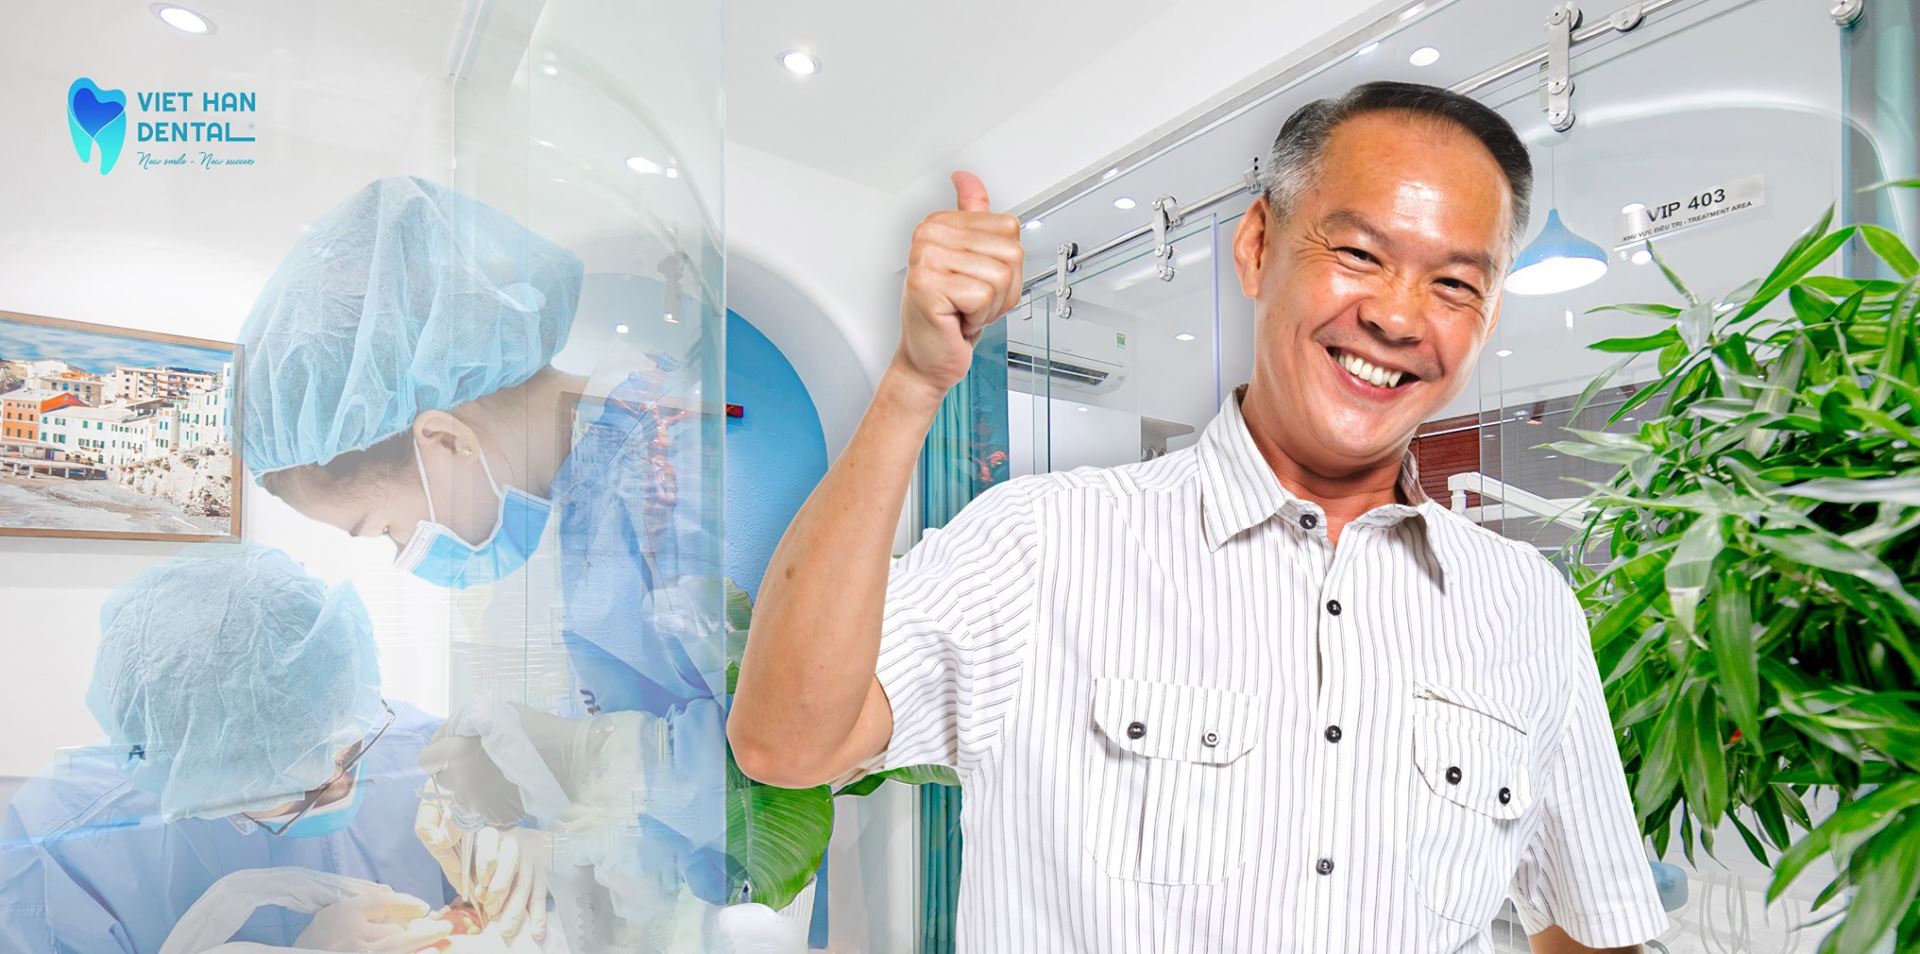 Khách hàng sau khi thực hiện trồng răng Implant tại Nha khoa Việt Hàn 